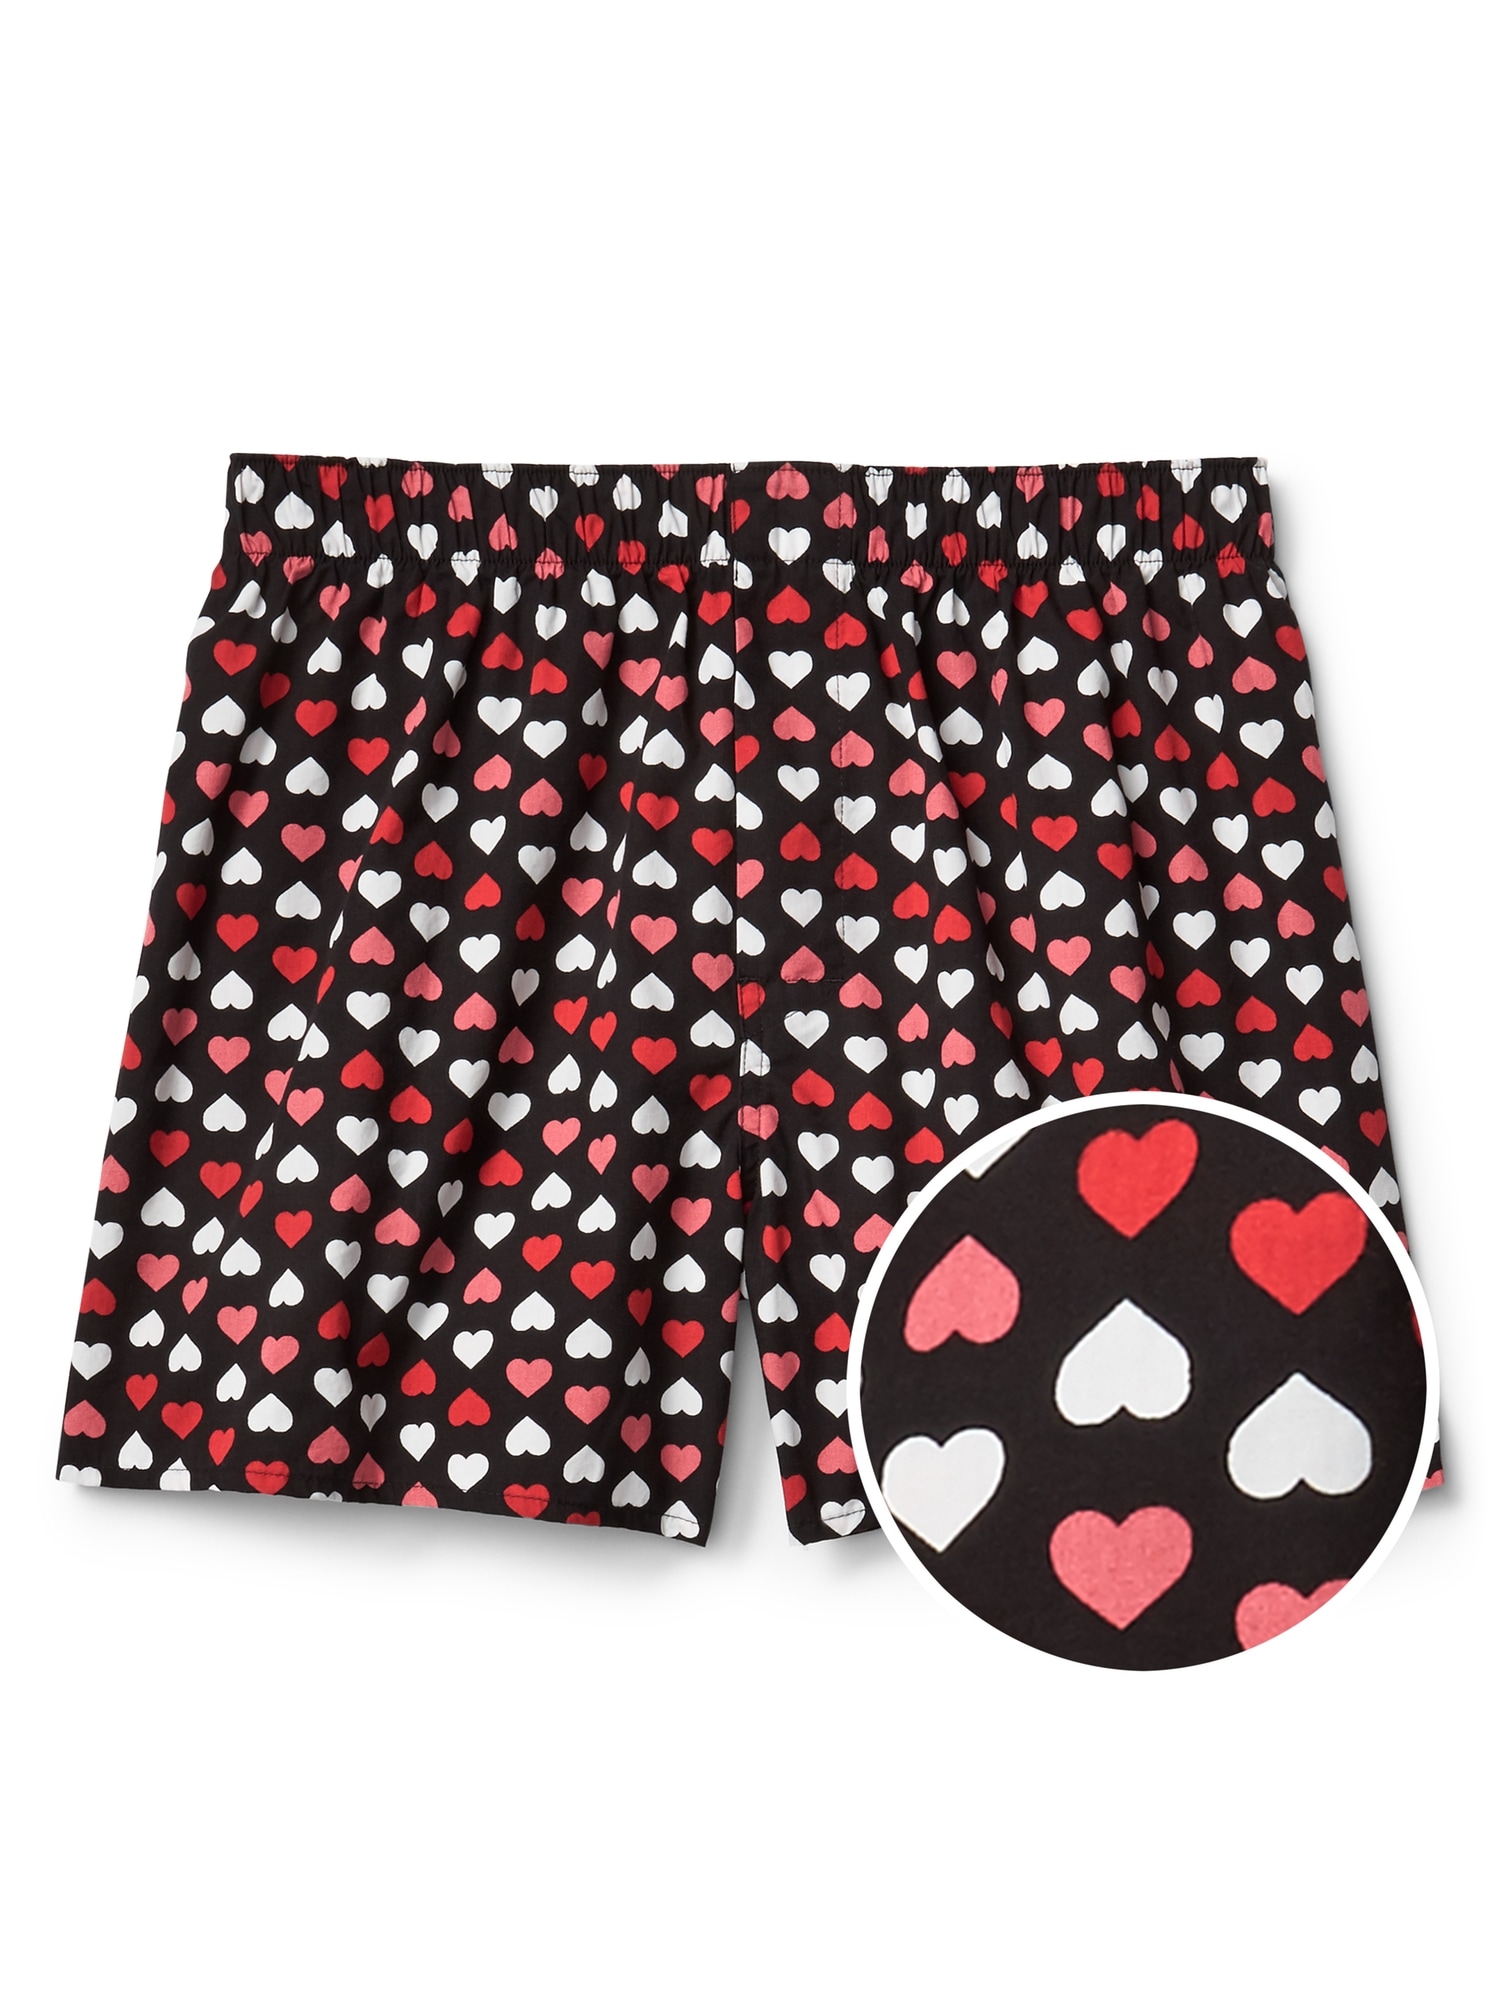 PMUYBHF Underwear Men Boxer Men's Valentine's Day Underwear Love Heart  Printed underpants Men's Thong Underwear Christmas 